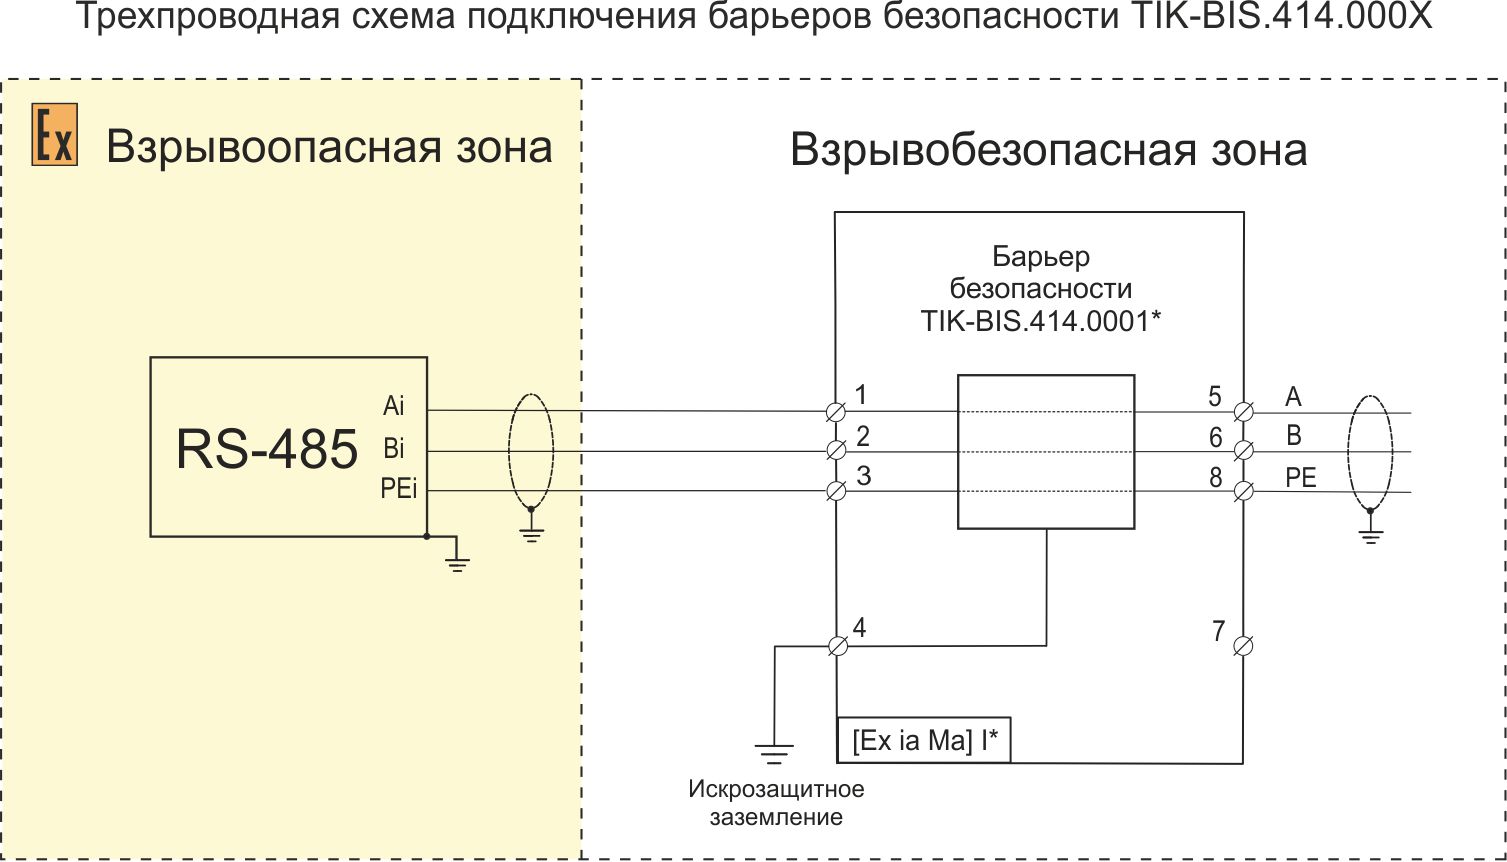 Схема подключения к барьеру безопасности TIK-BIS.414.000Х